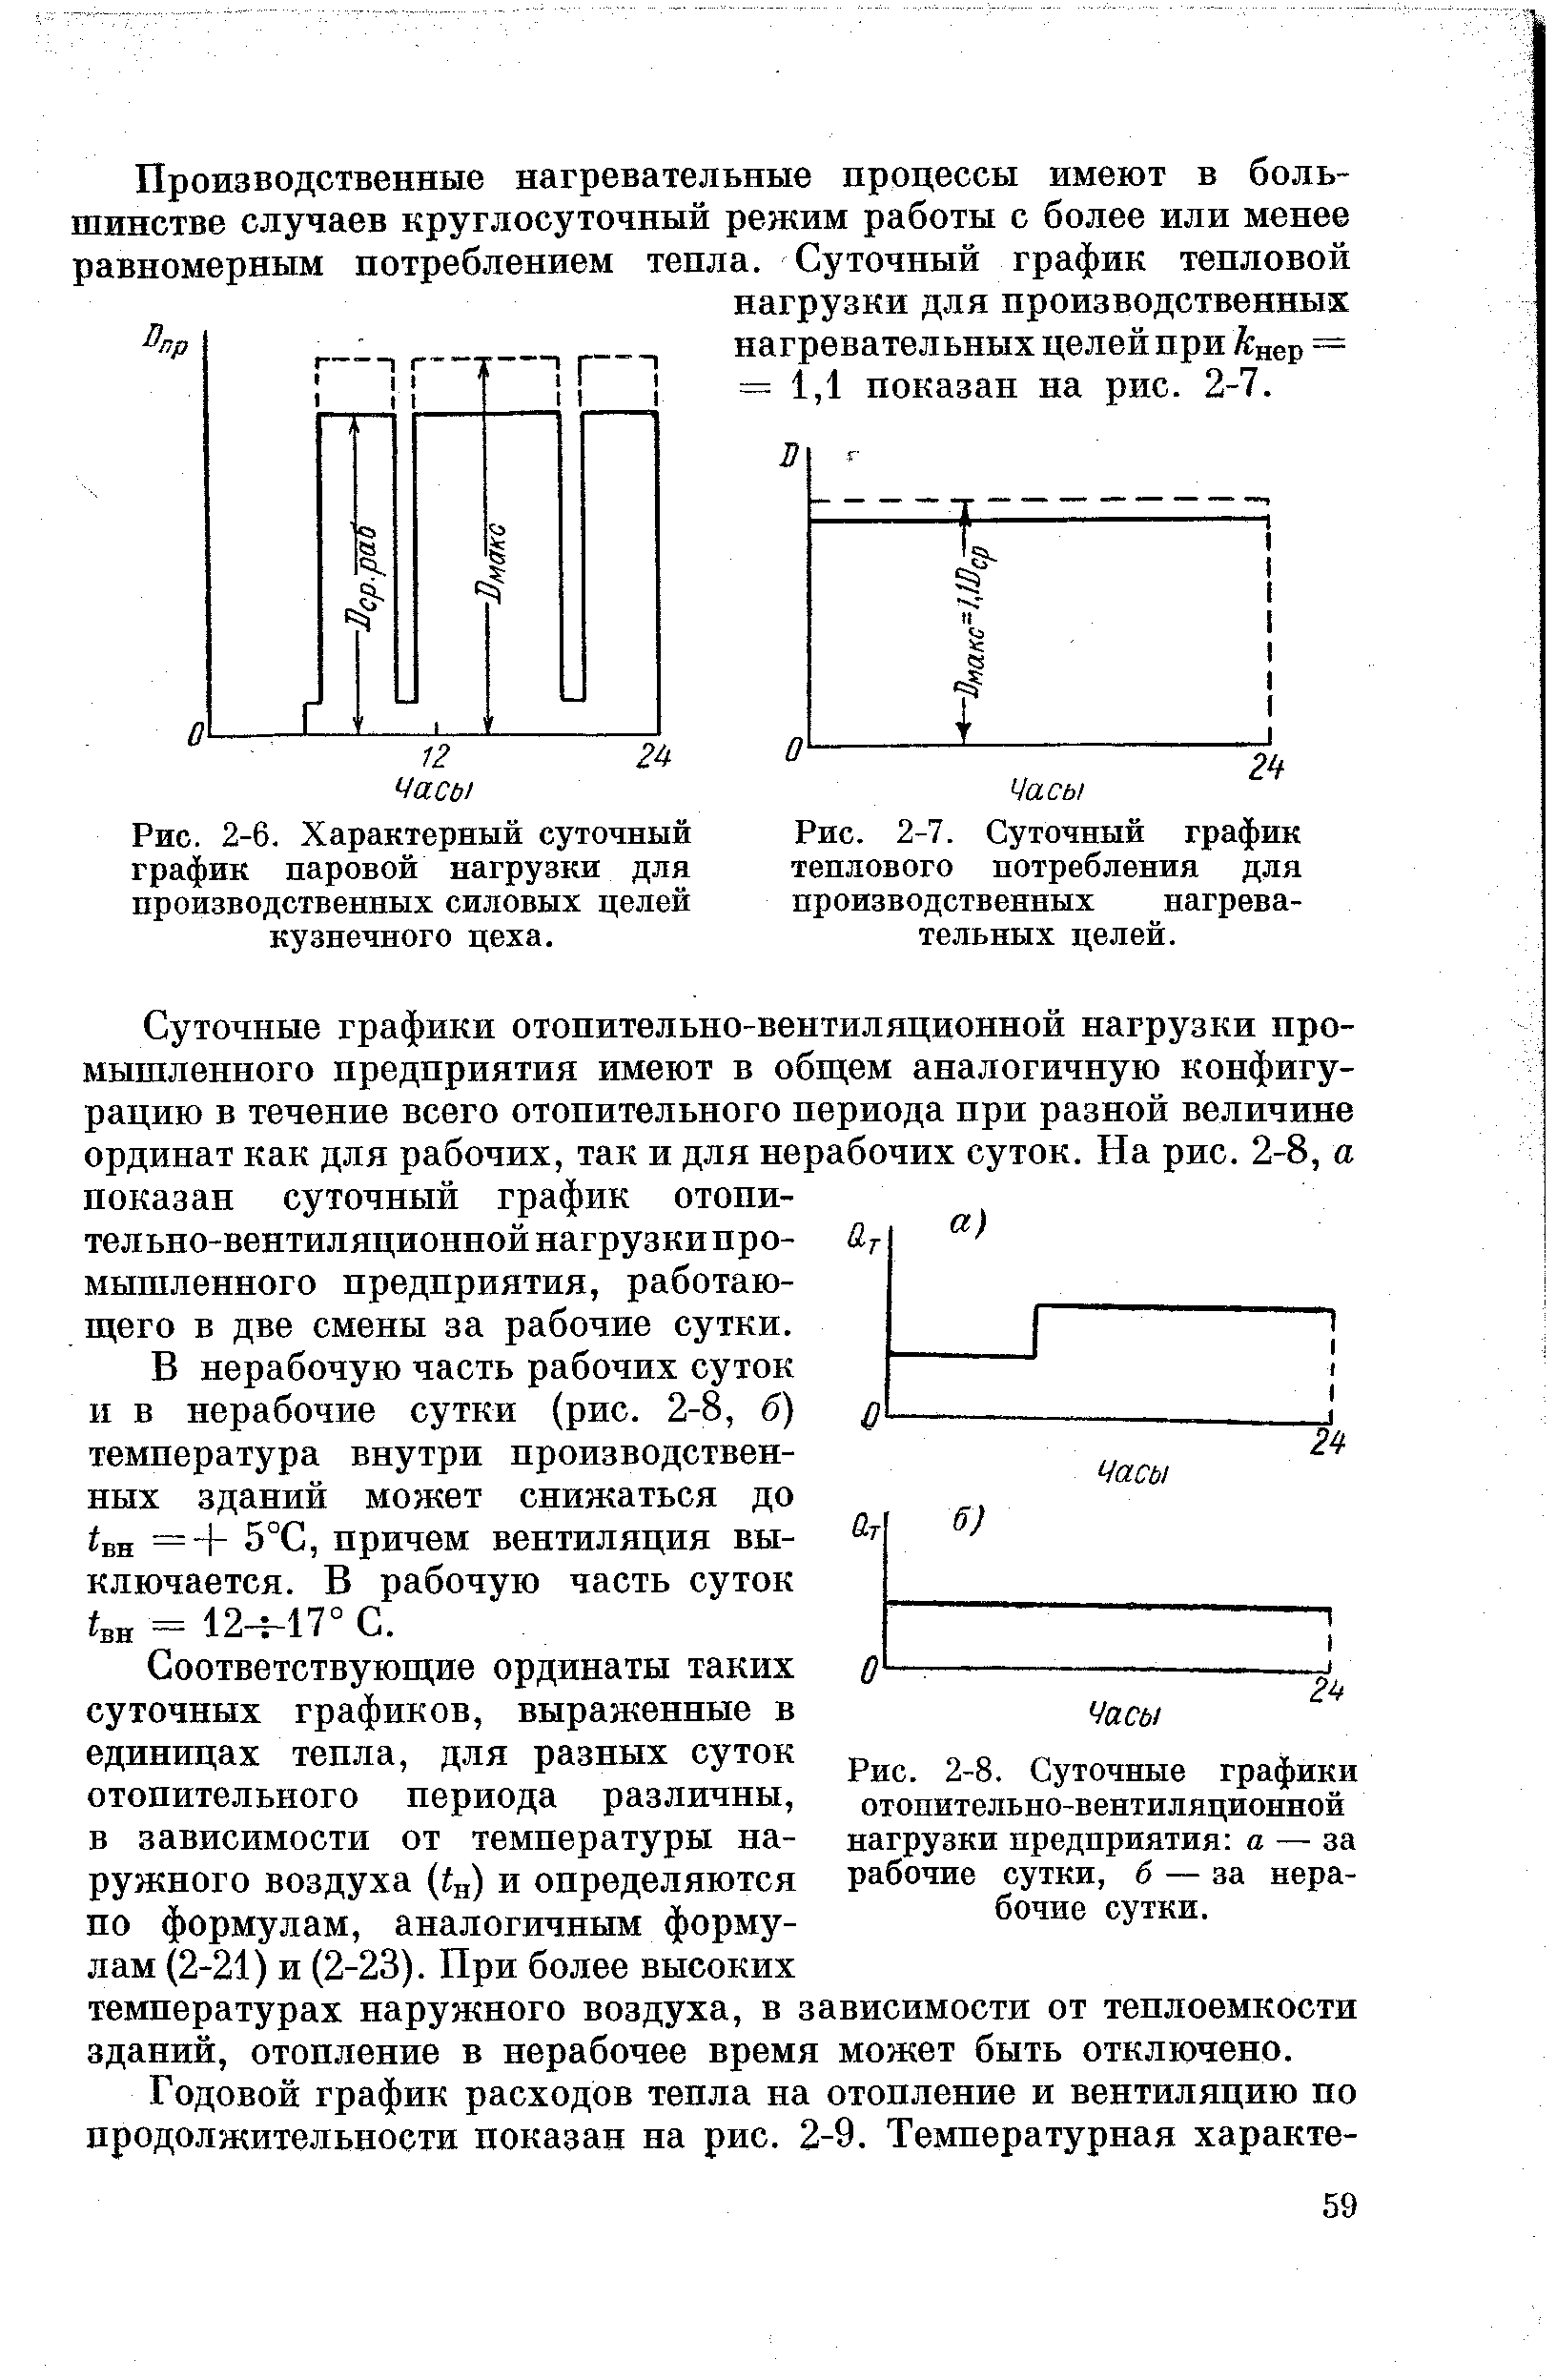 Рис. 2-6. Характерный суточный график паровой нагрузки для производственных силовых целей кузнечного цеха.
